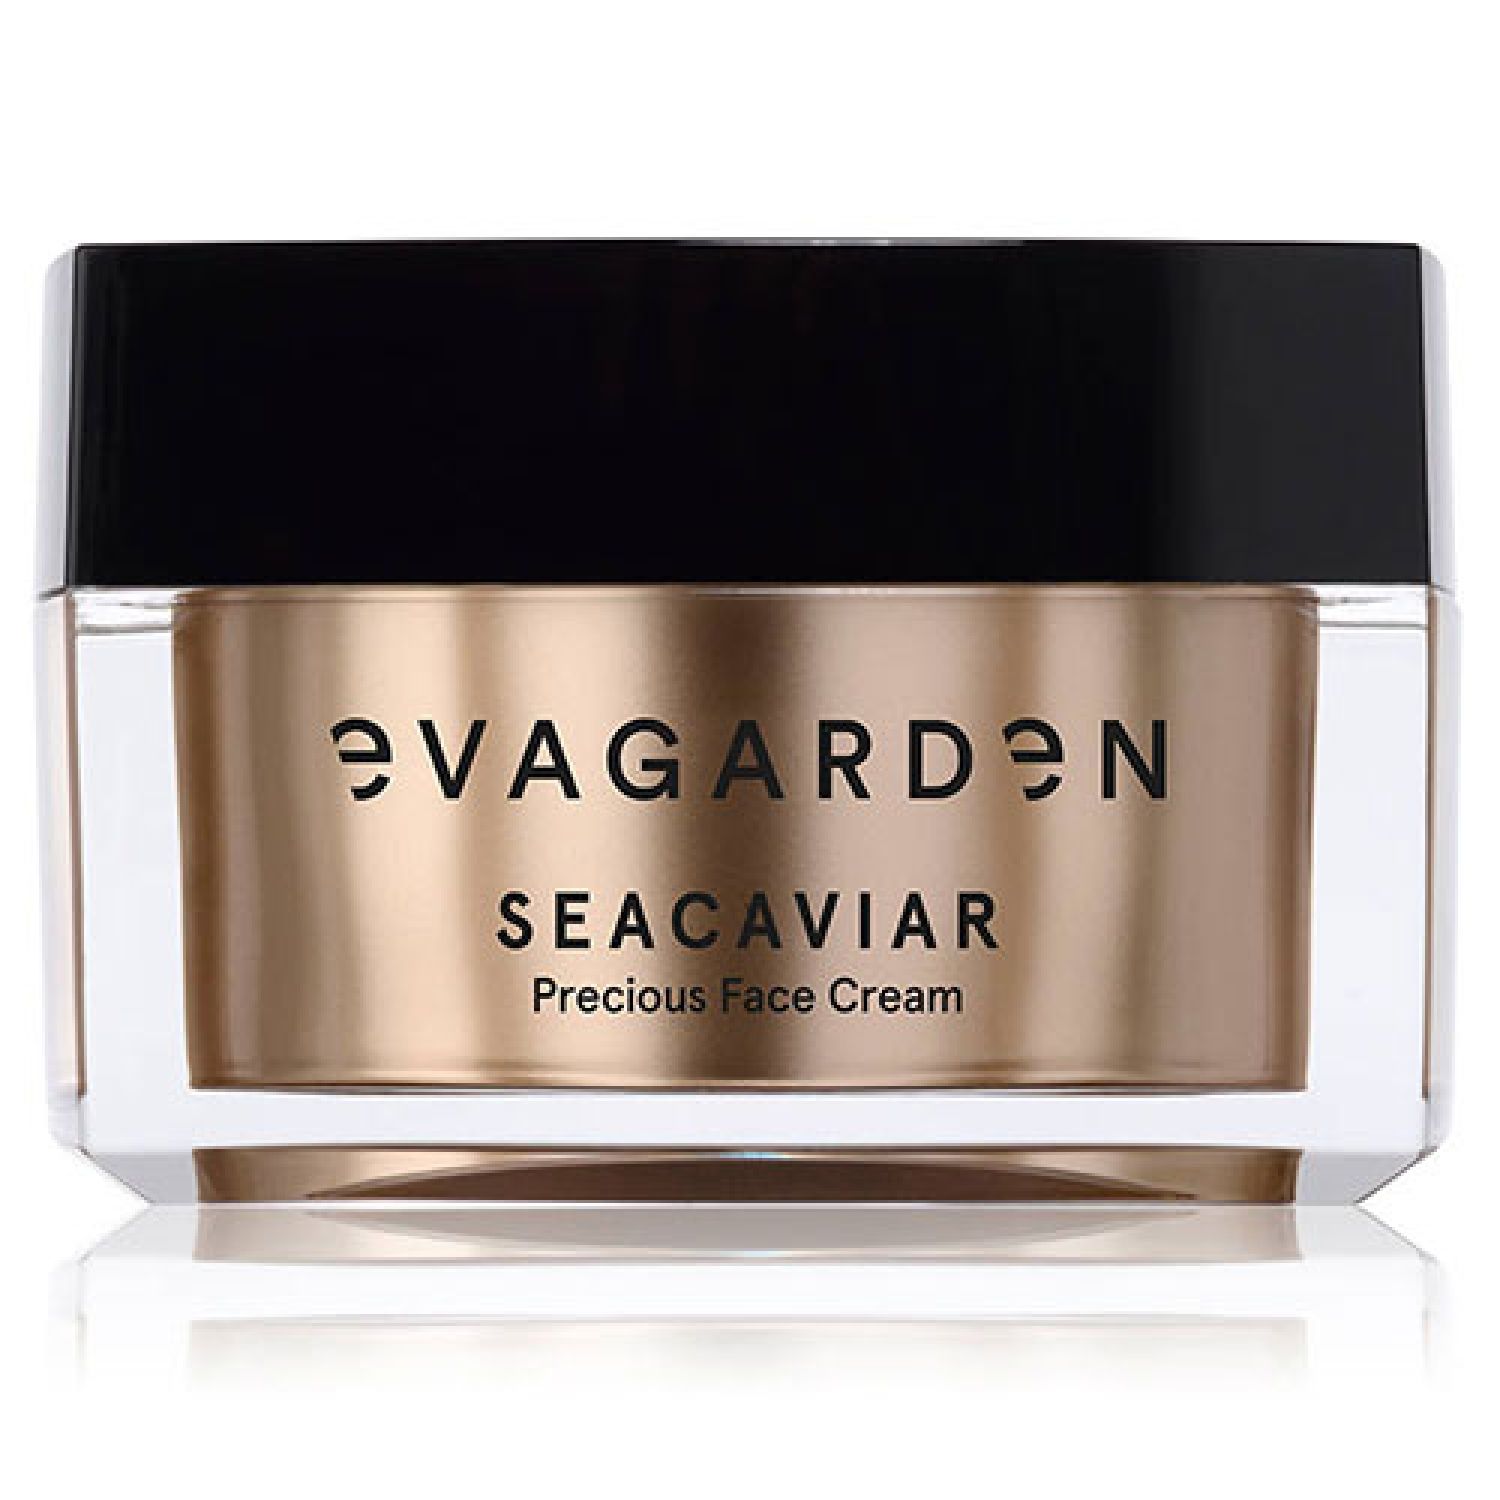 Eva Garden Seacaviar Face Cream